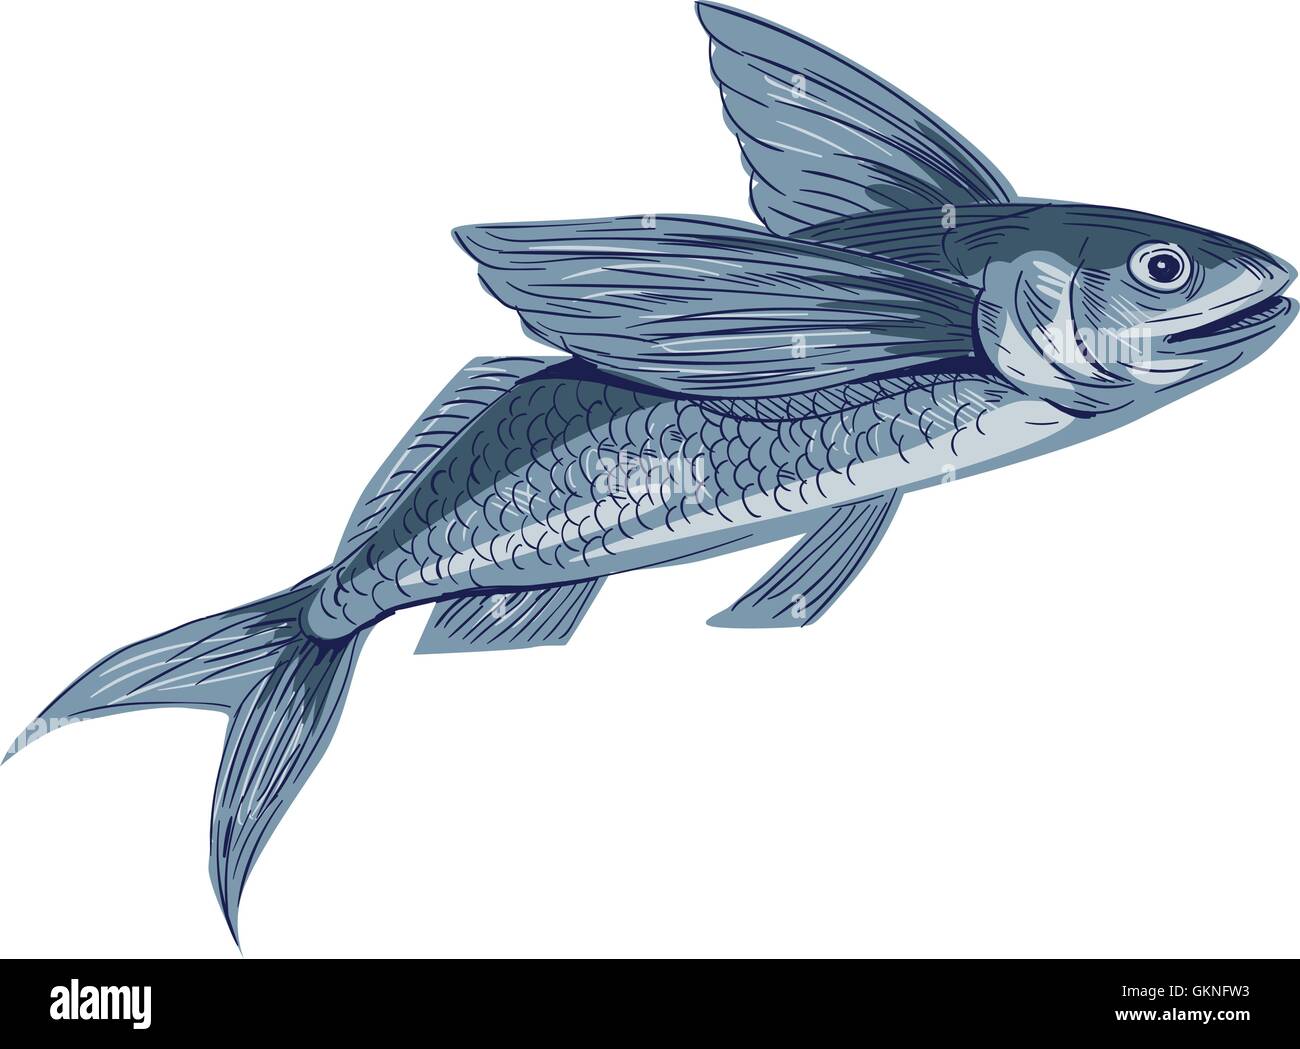 Croquis dessin illustration style de poisson volant ou Exocoetidae, une famille de poissons marins dans l'ordre de la classe des Actinoptérygiens Beloniformes vu du côté situé sur fond blanc isolé Illustration de Vecteur